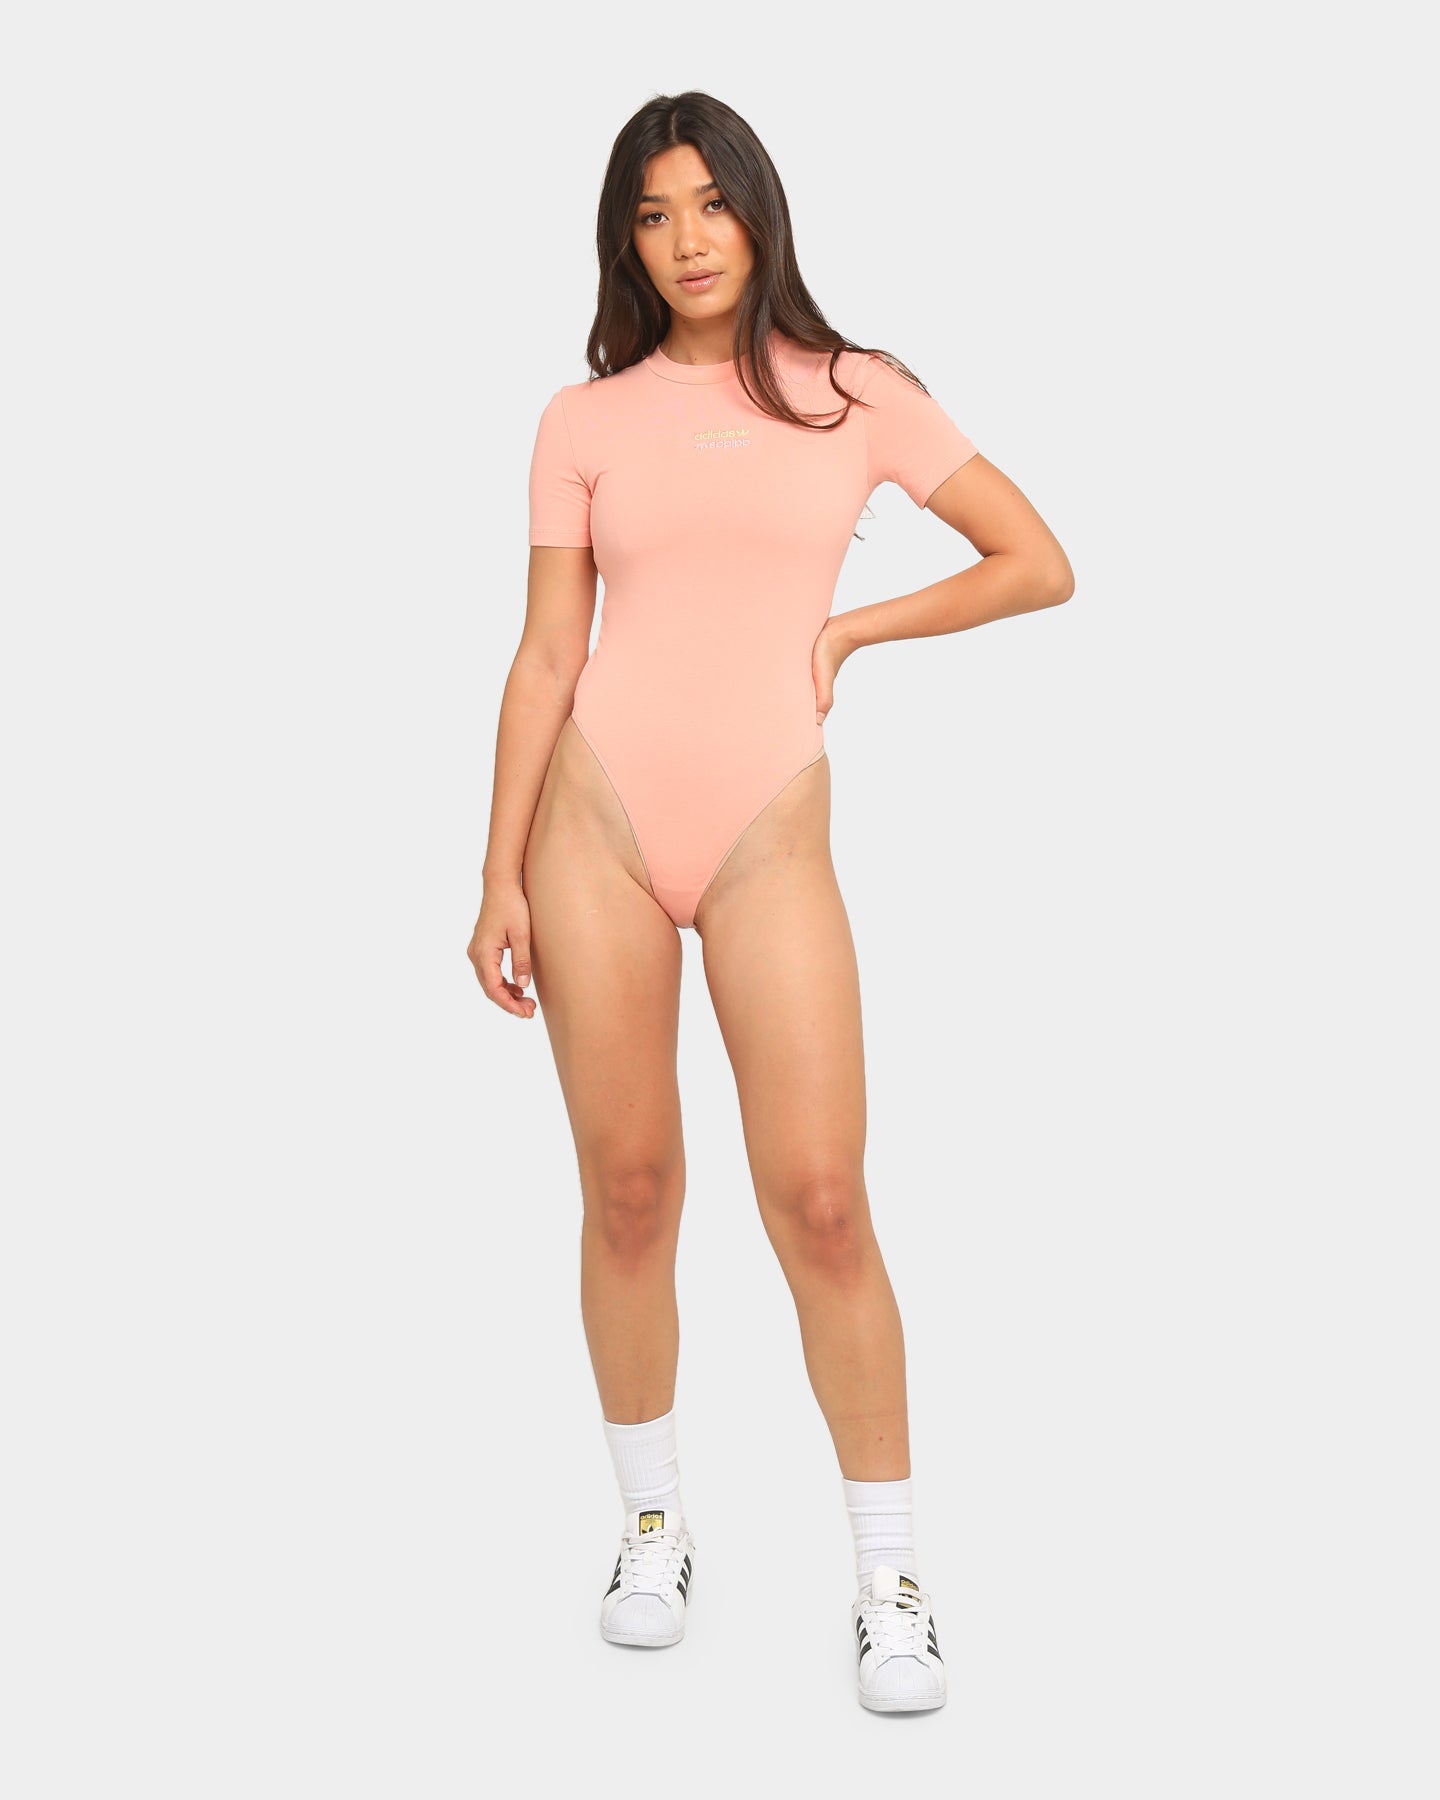 adidas pink bodysuit